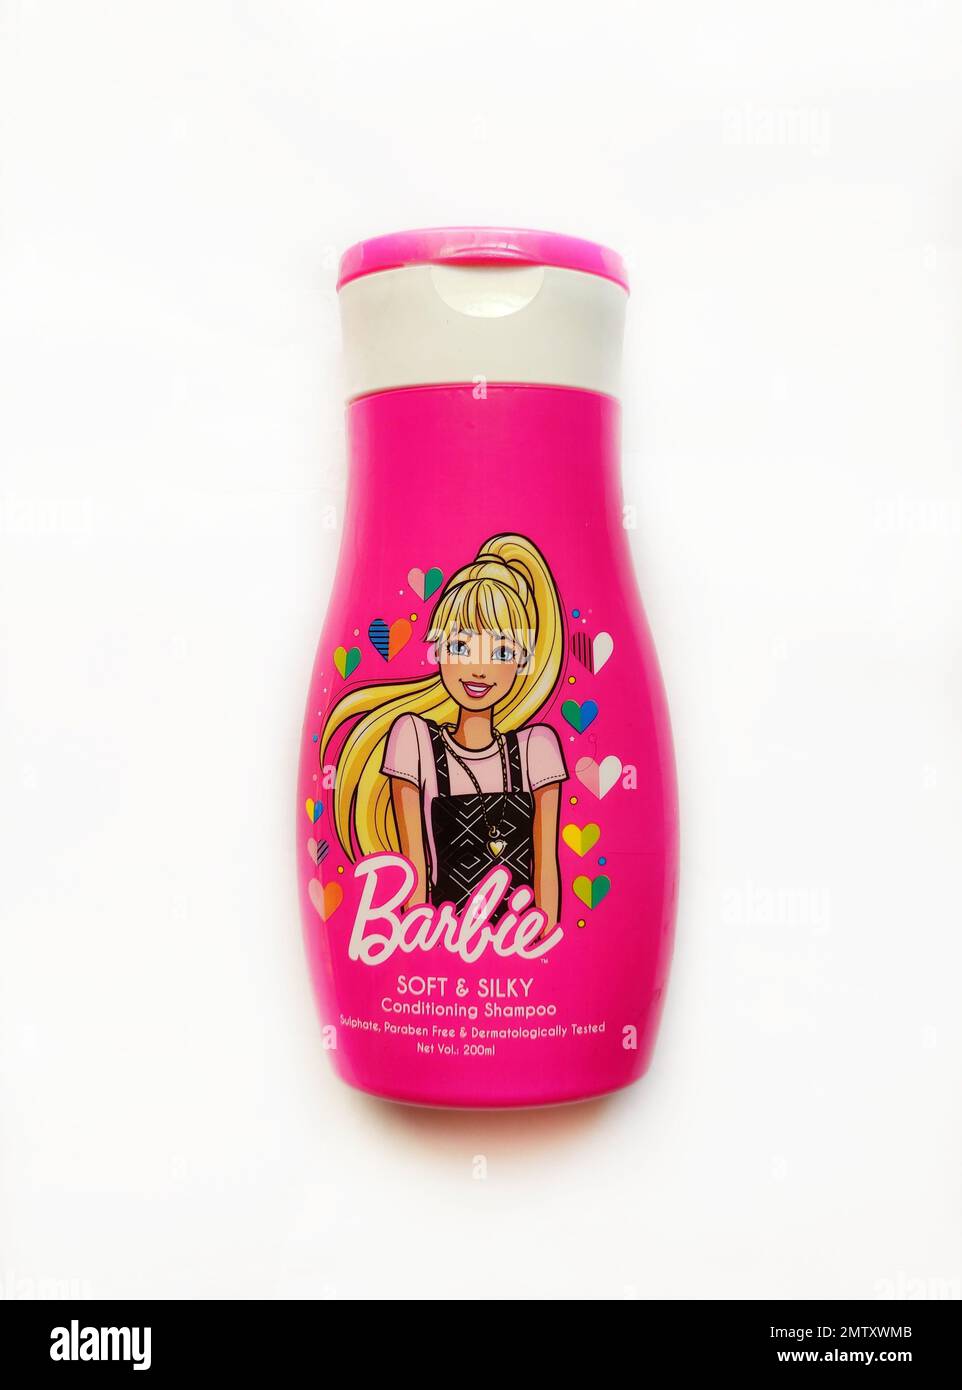 Barbie pflegende Shampoo-Flasche aus weichem und seidenhaftem Material im  isolierten Hintergrund Stockfotografie - Alamy